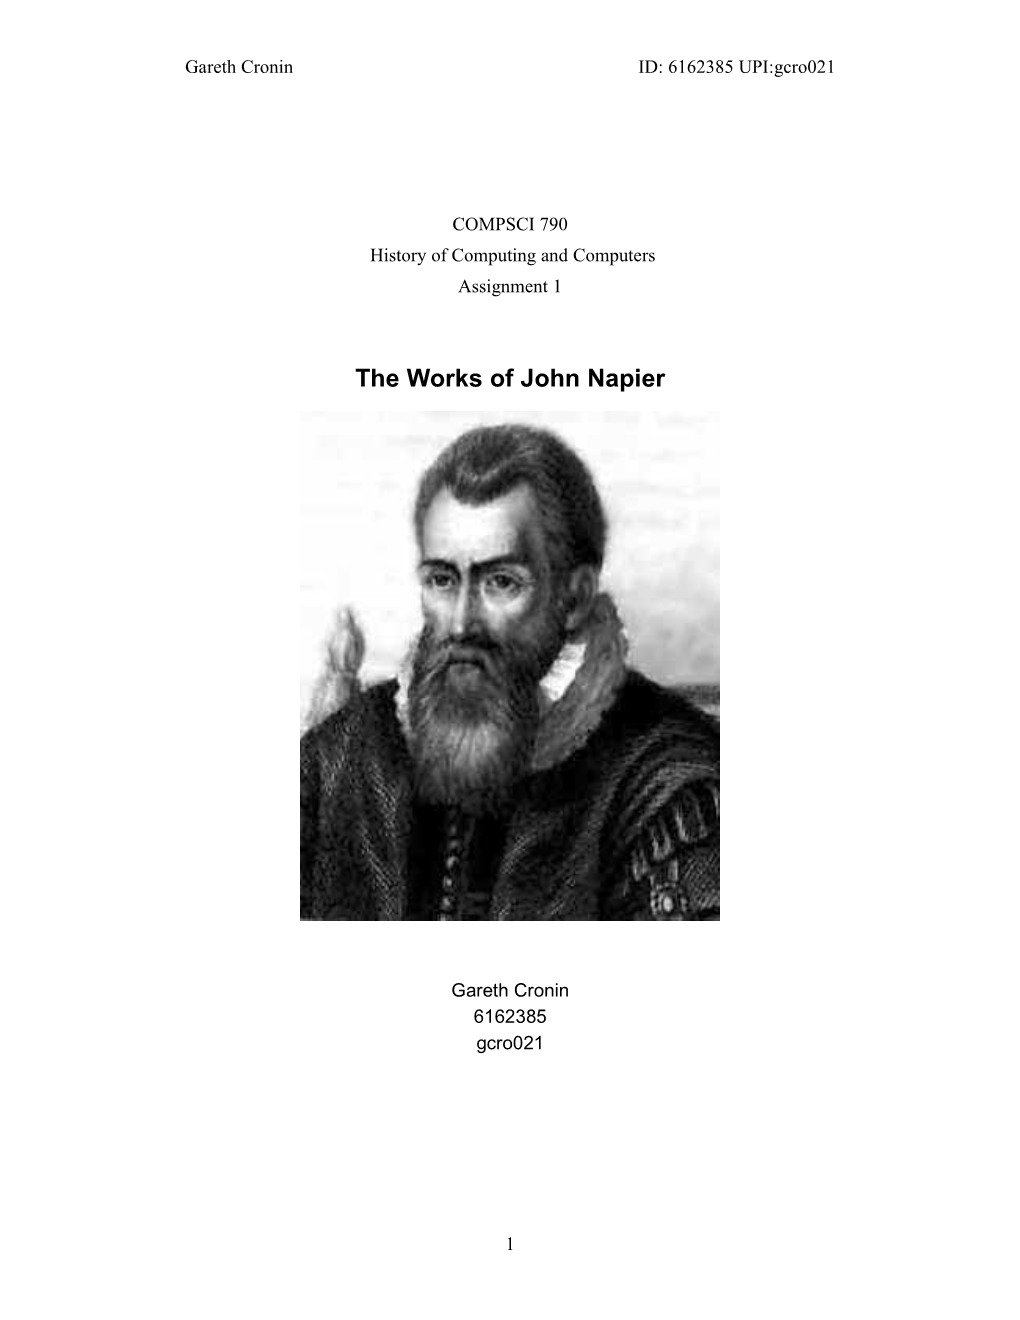 The Works of John Napier